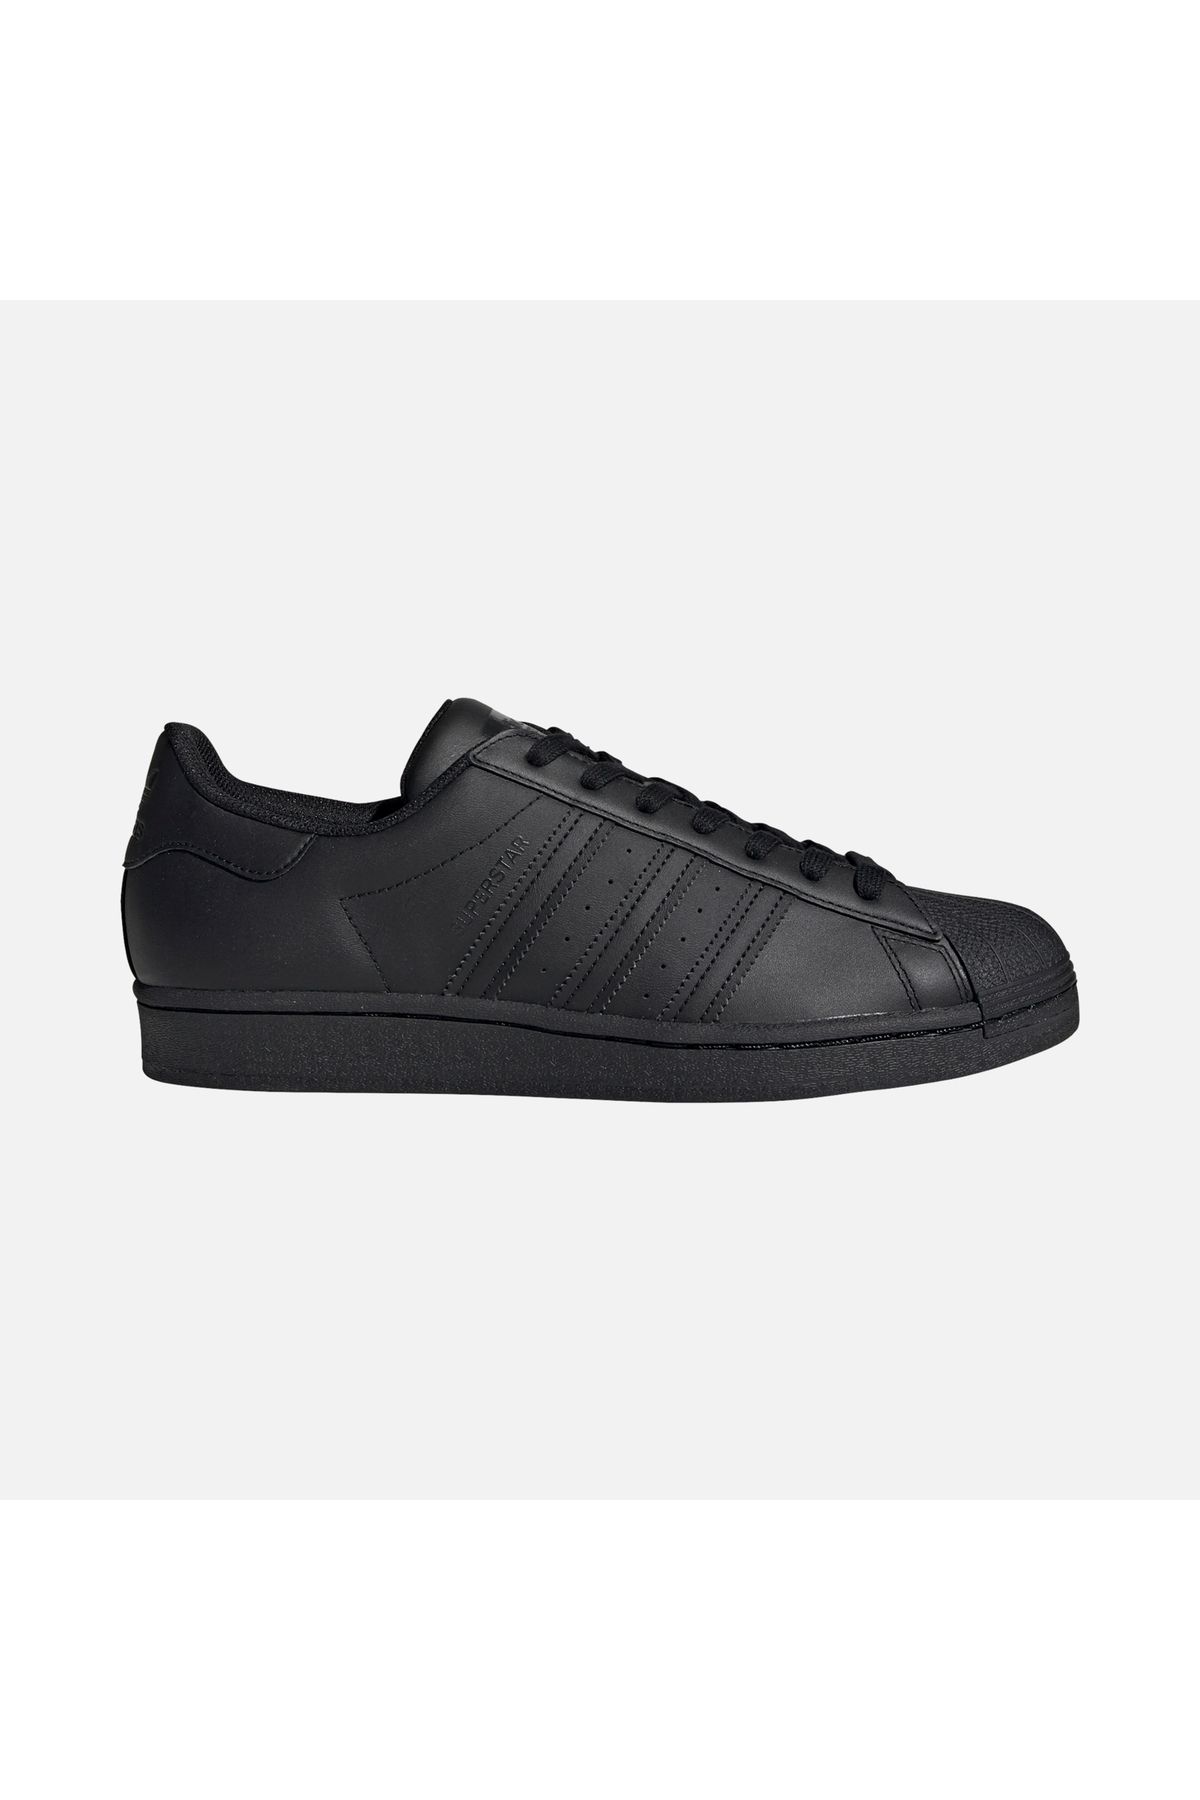 adidas Eg4957-e Superstar Erkek Spor Ayakkabı Siyah